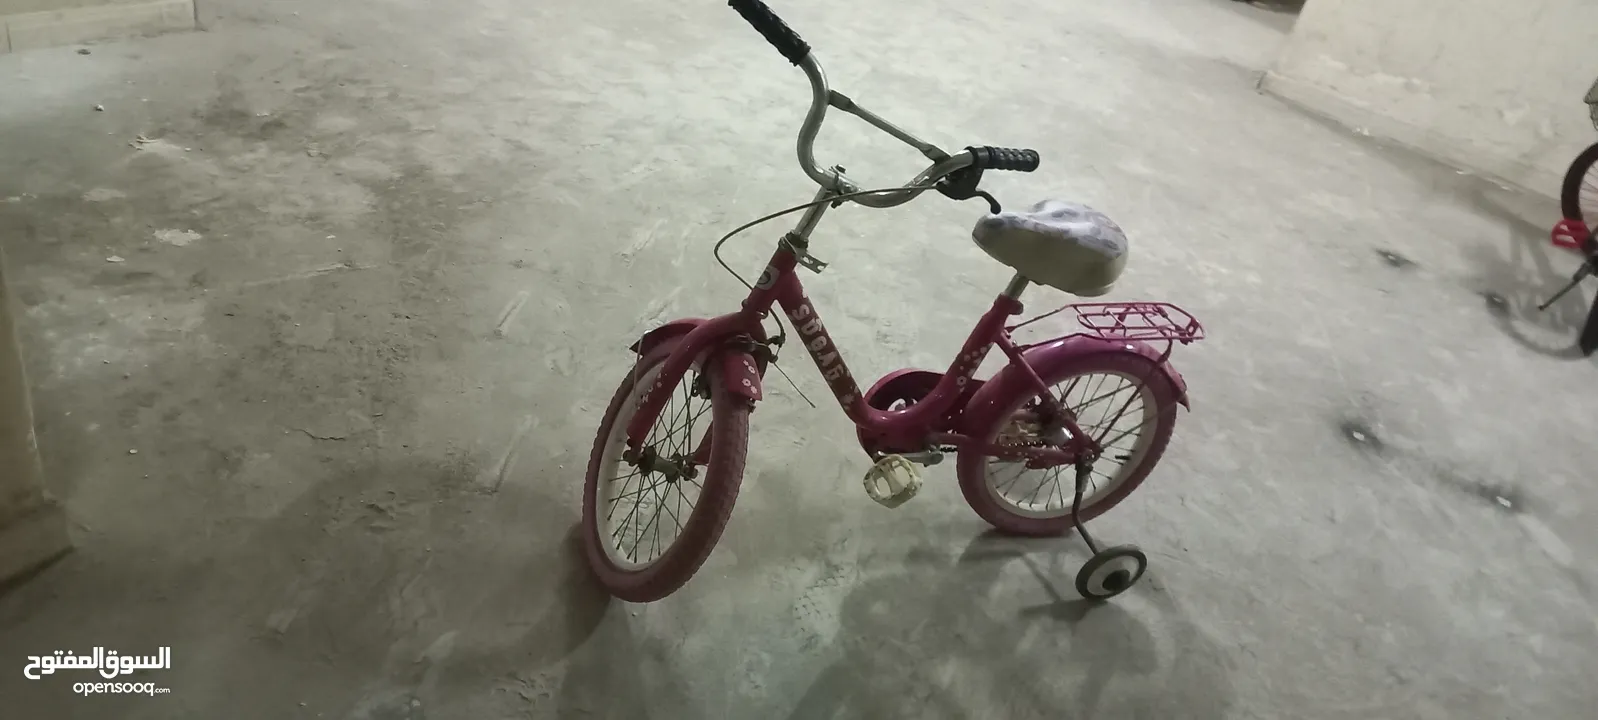 2عجل دراجة اطفال مستعملة